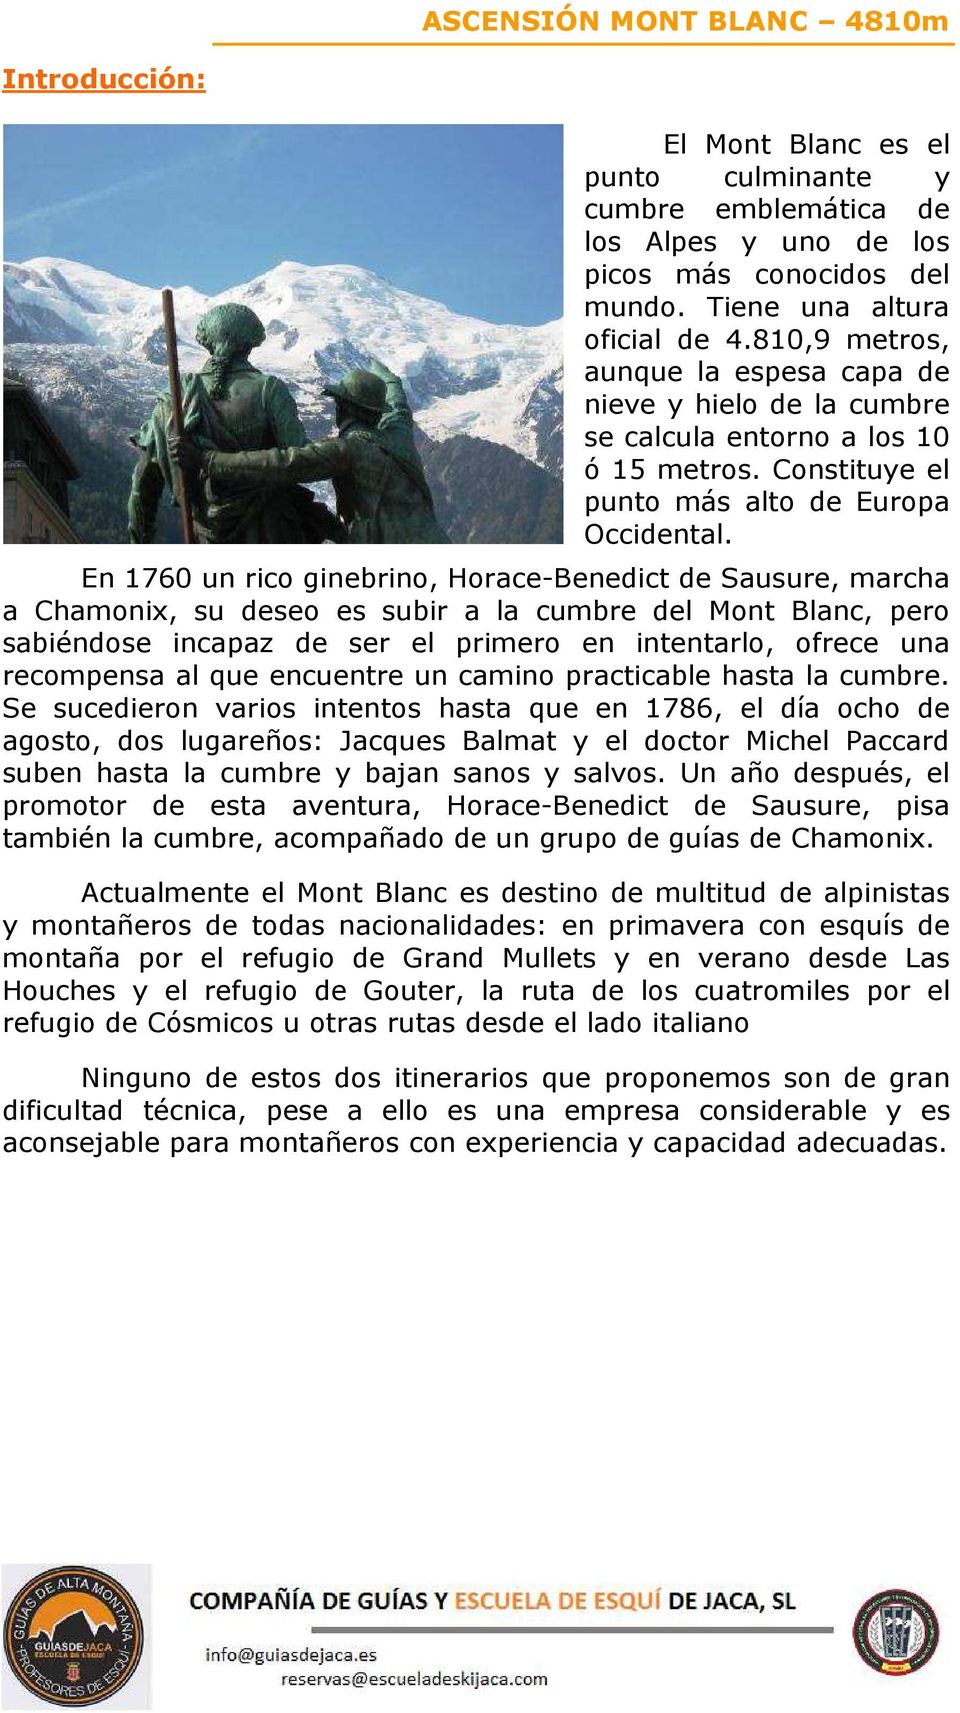 En 1760 un rico ginebrino, Horace-Benedict de Sausure, marcha a Chamonix, su deseo es subir a la cumbre del Mont Blanc, pero sabiéndose incapaz de ser el primero en intentarlo, ofrece una recompensa